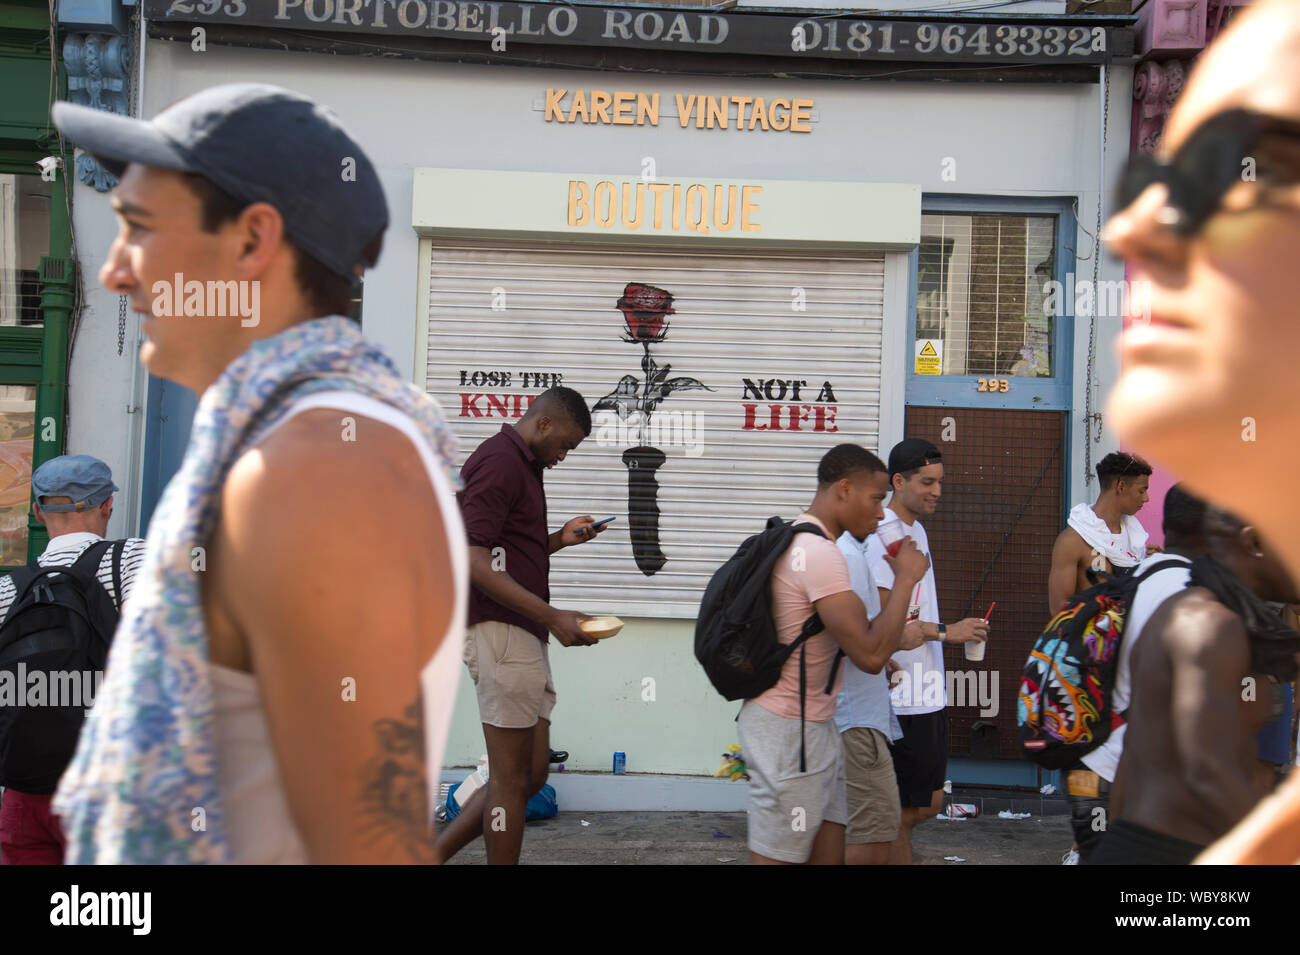 Le carnaval de Notting Hill, le 26 août 2019. Les jeunes passent devant une boutique avec le slogan "Perdre le couteau, pas une vie" peint sur son obturateur. Banque D'Images